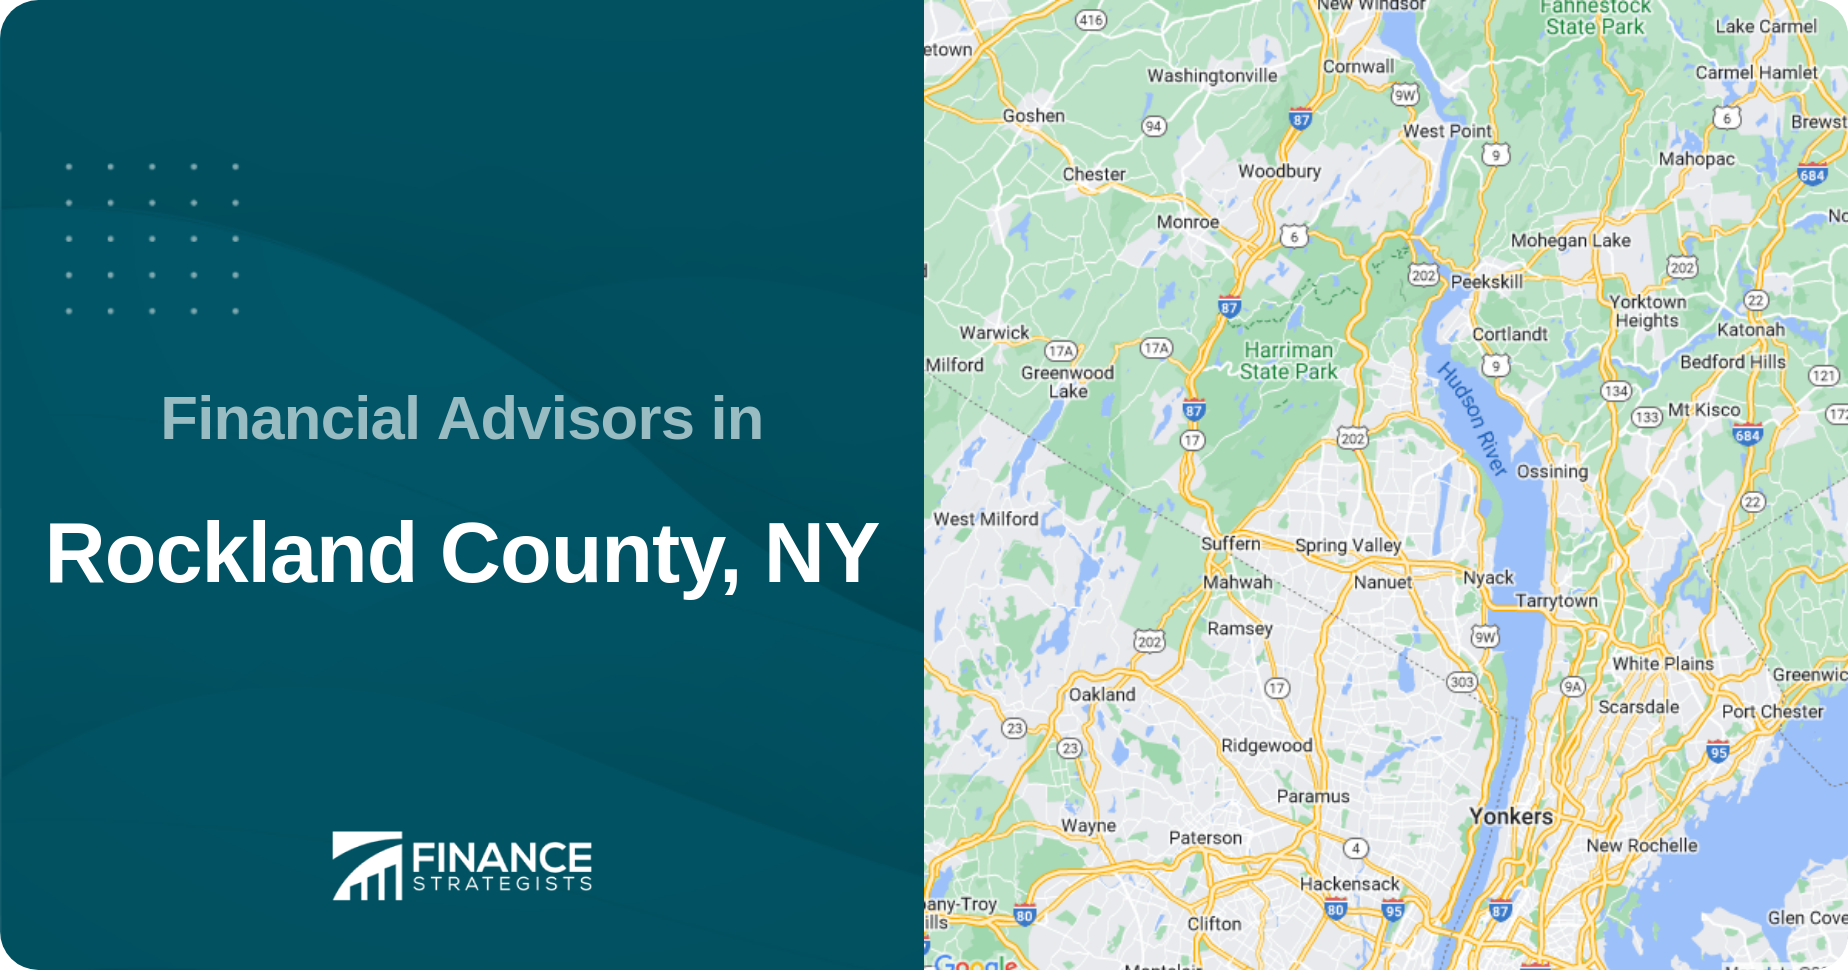 Financial Advisors in Rockland County, NY